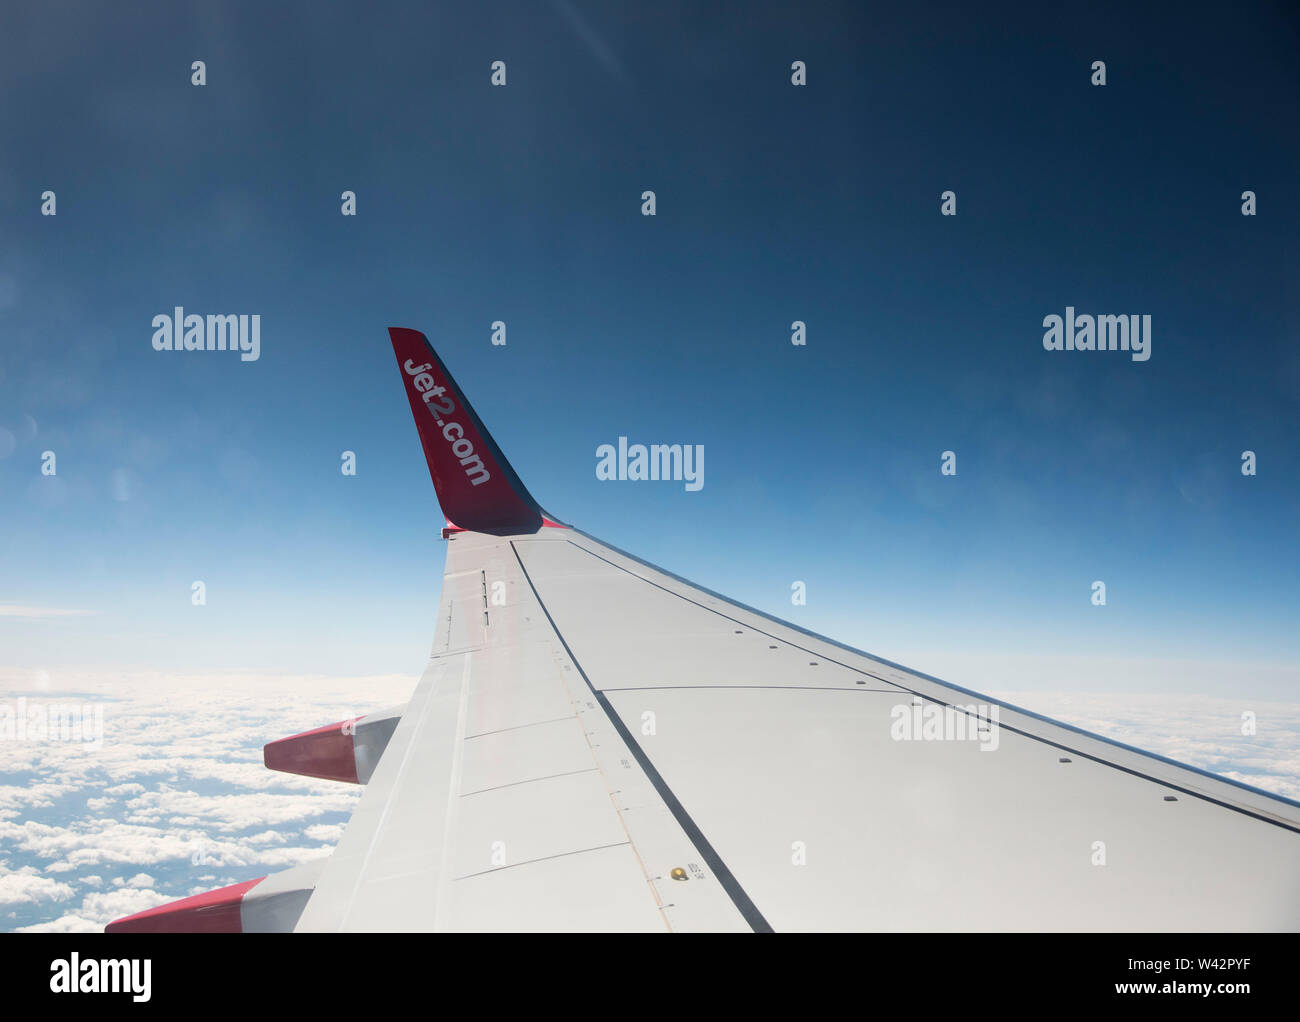 Getto 2 ALA DI AEROMOBILE fotografato attraverso una finestra del piano contro il cielo blu chiaro Foto Stock